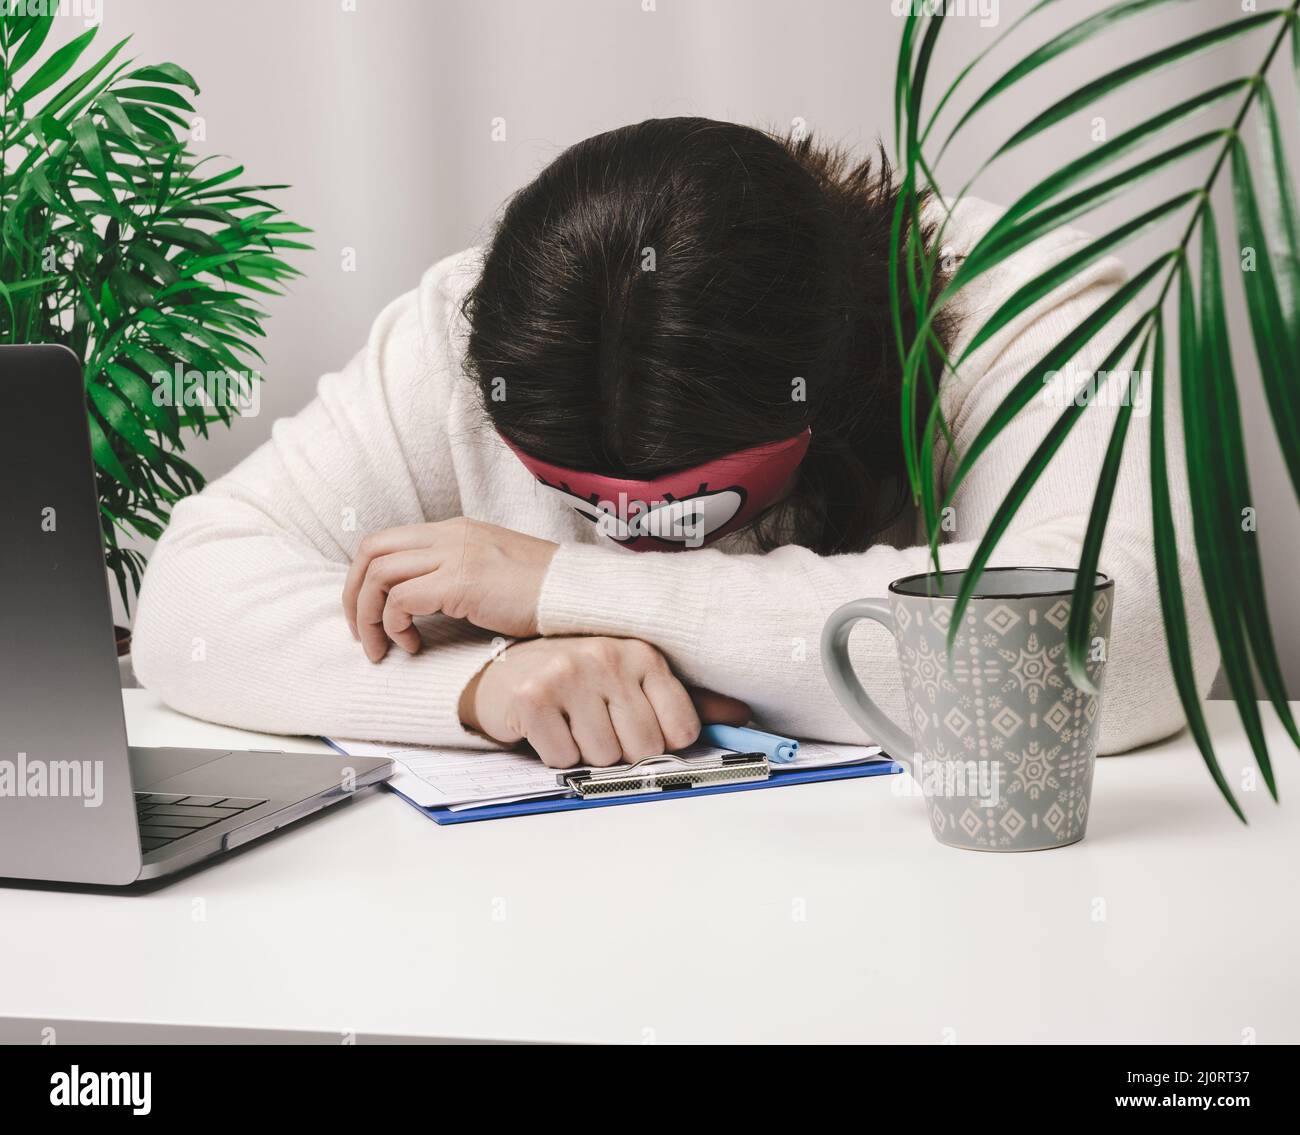 Une femme dans un chandail dort à une table de travail, à côté d'un ordinateur portable. Concept de fatigue et de surcharge. Paresse Banque D'Images